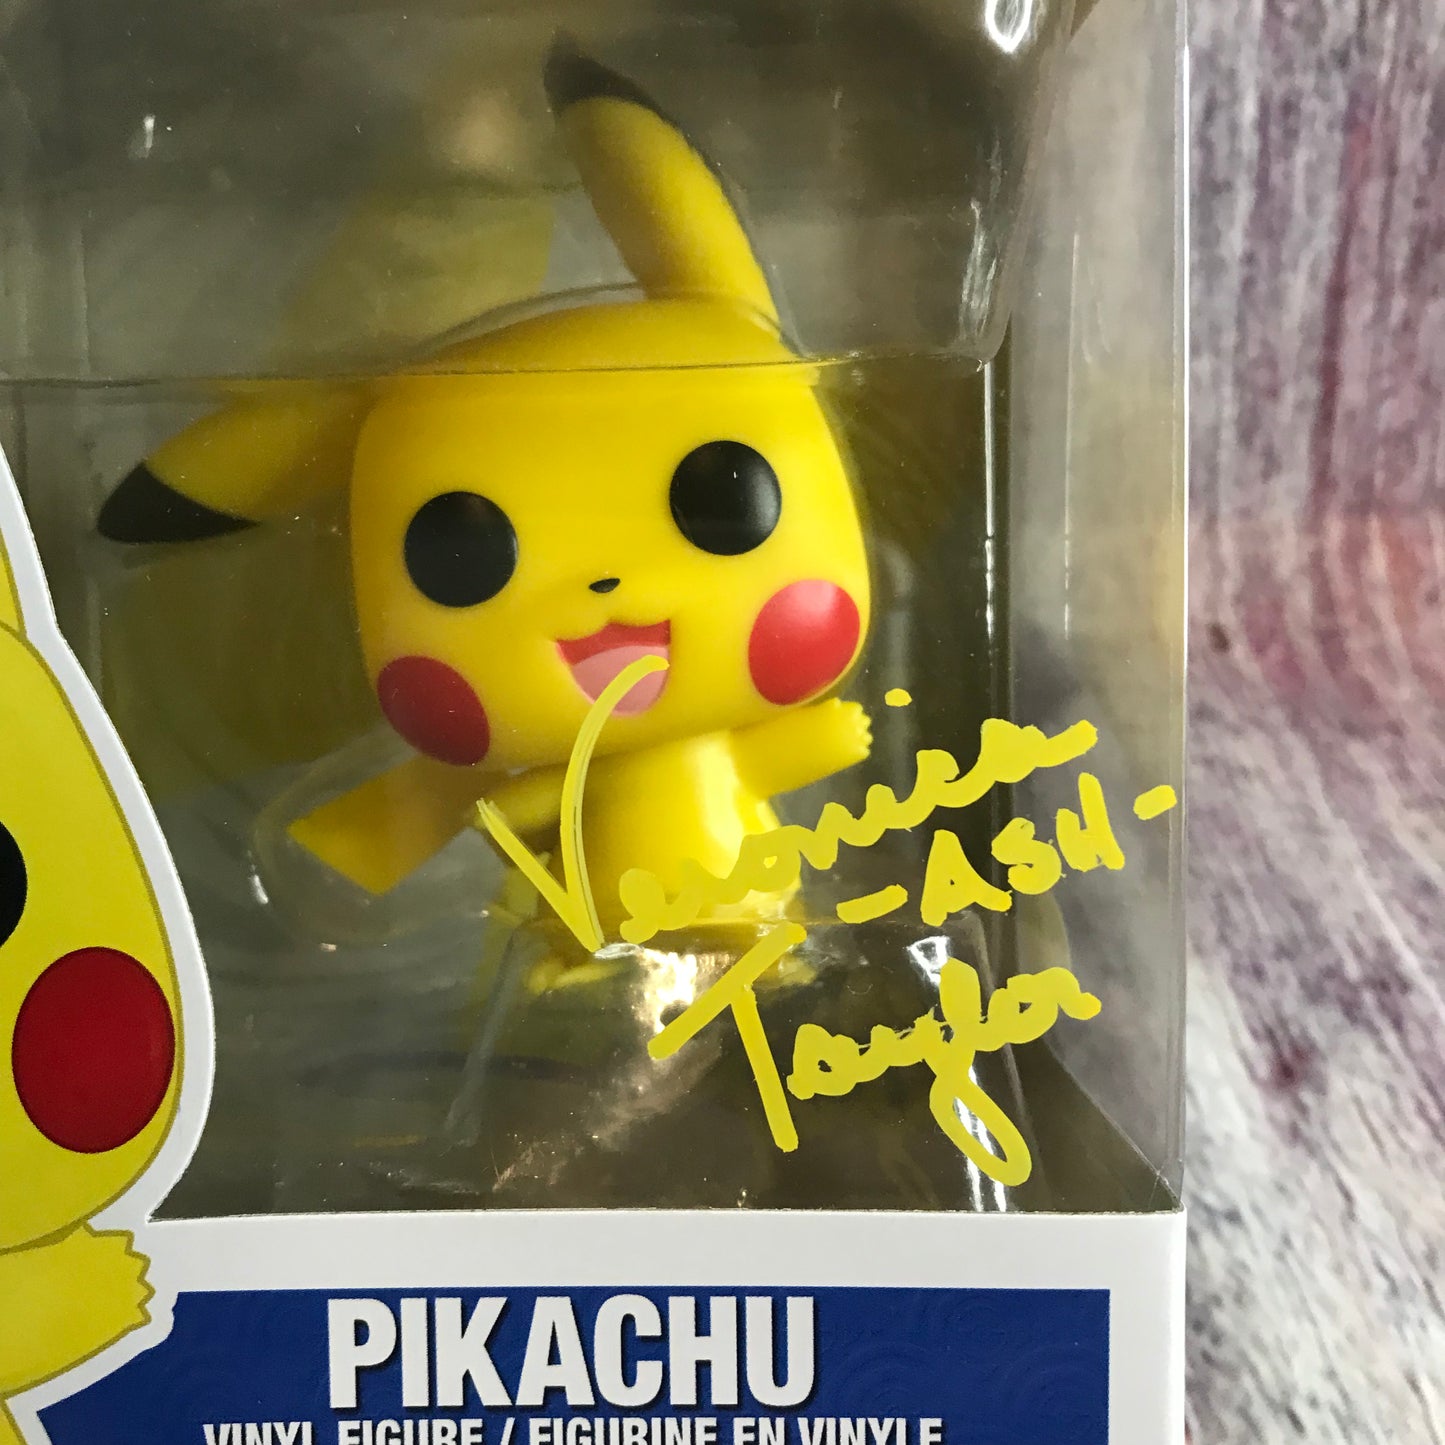 553 Signed Pokémon, Pikachu